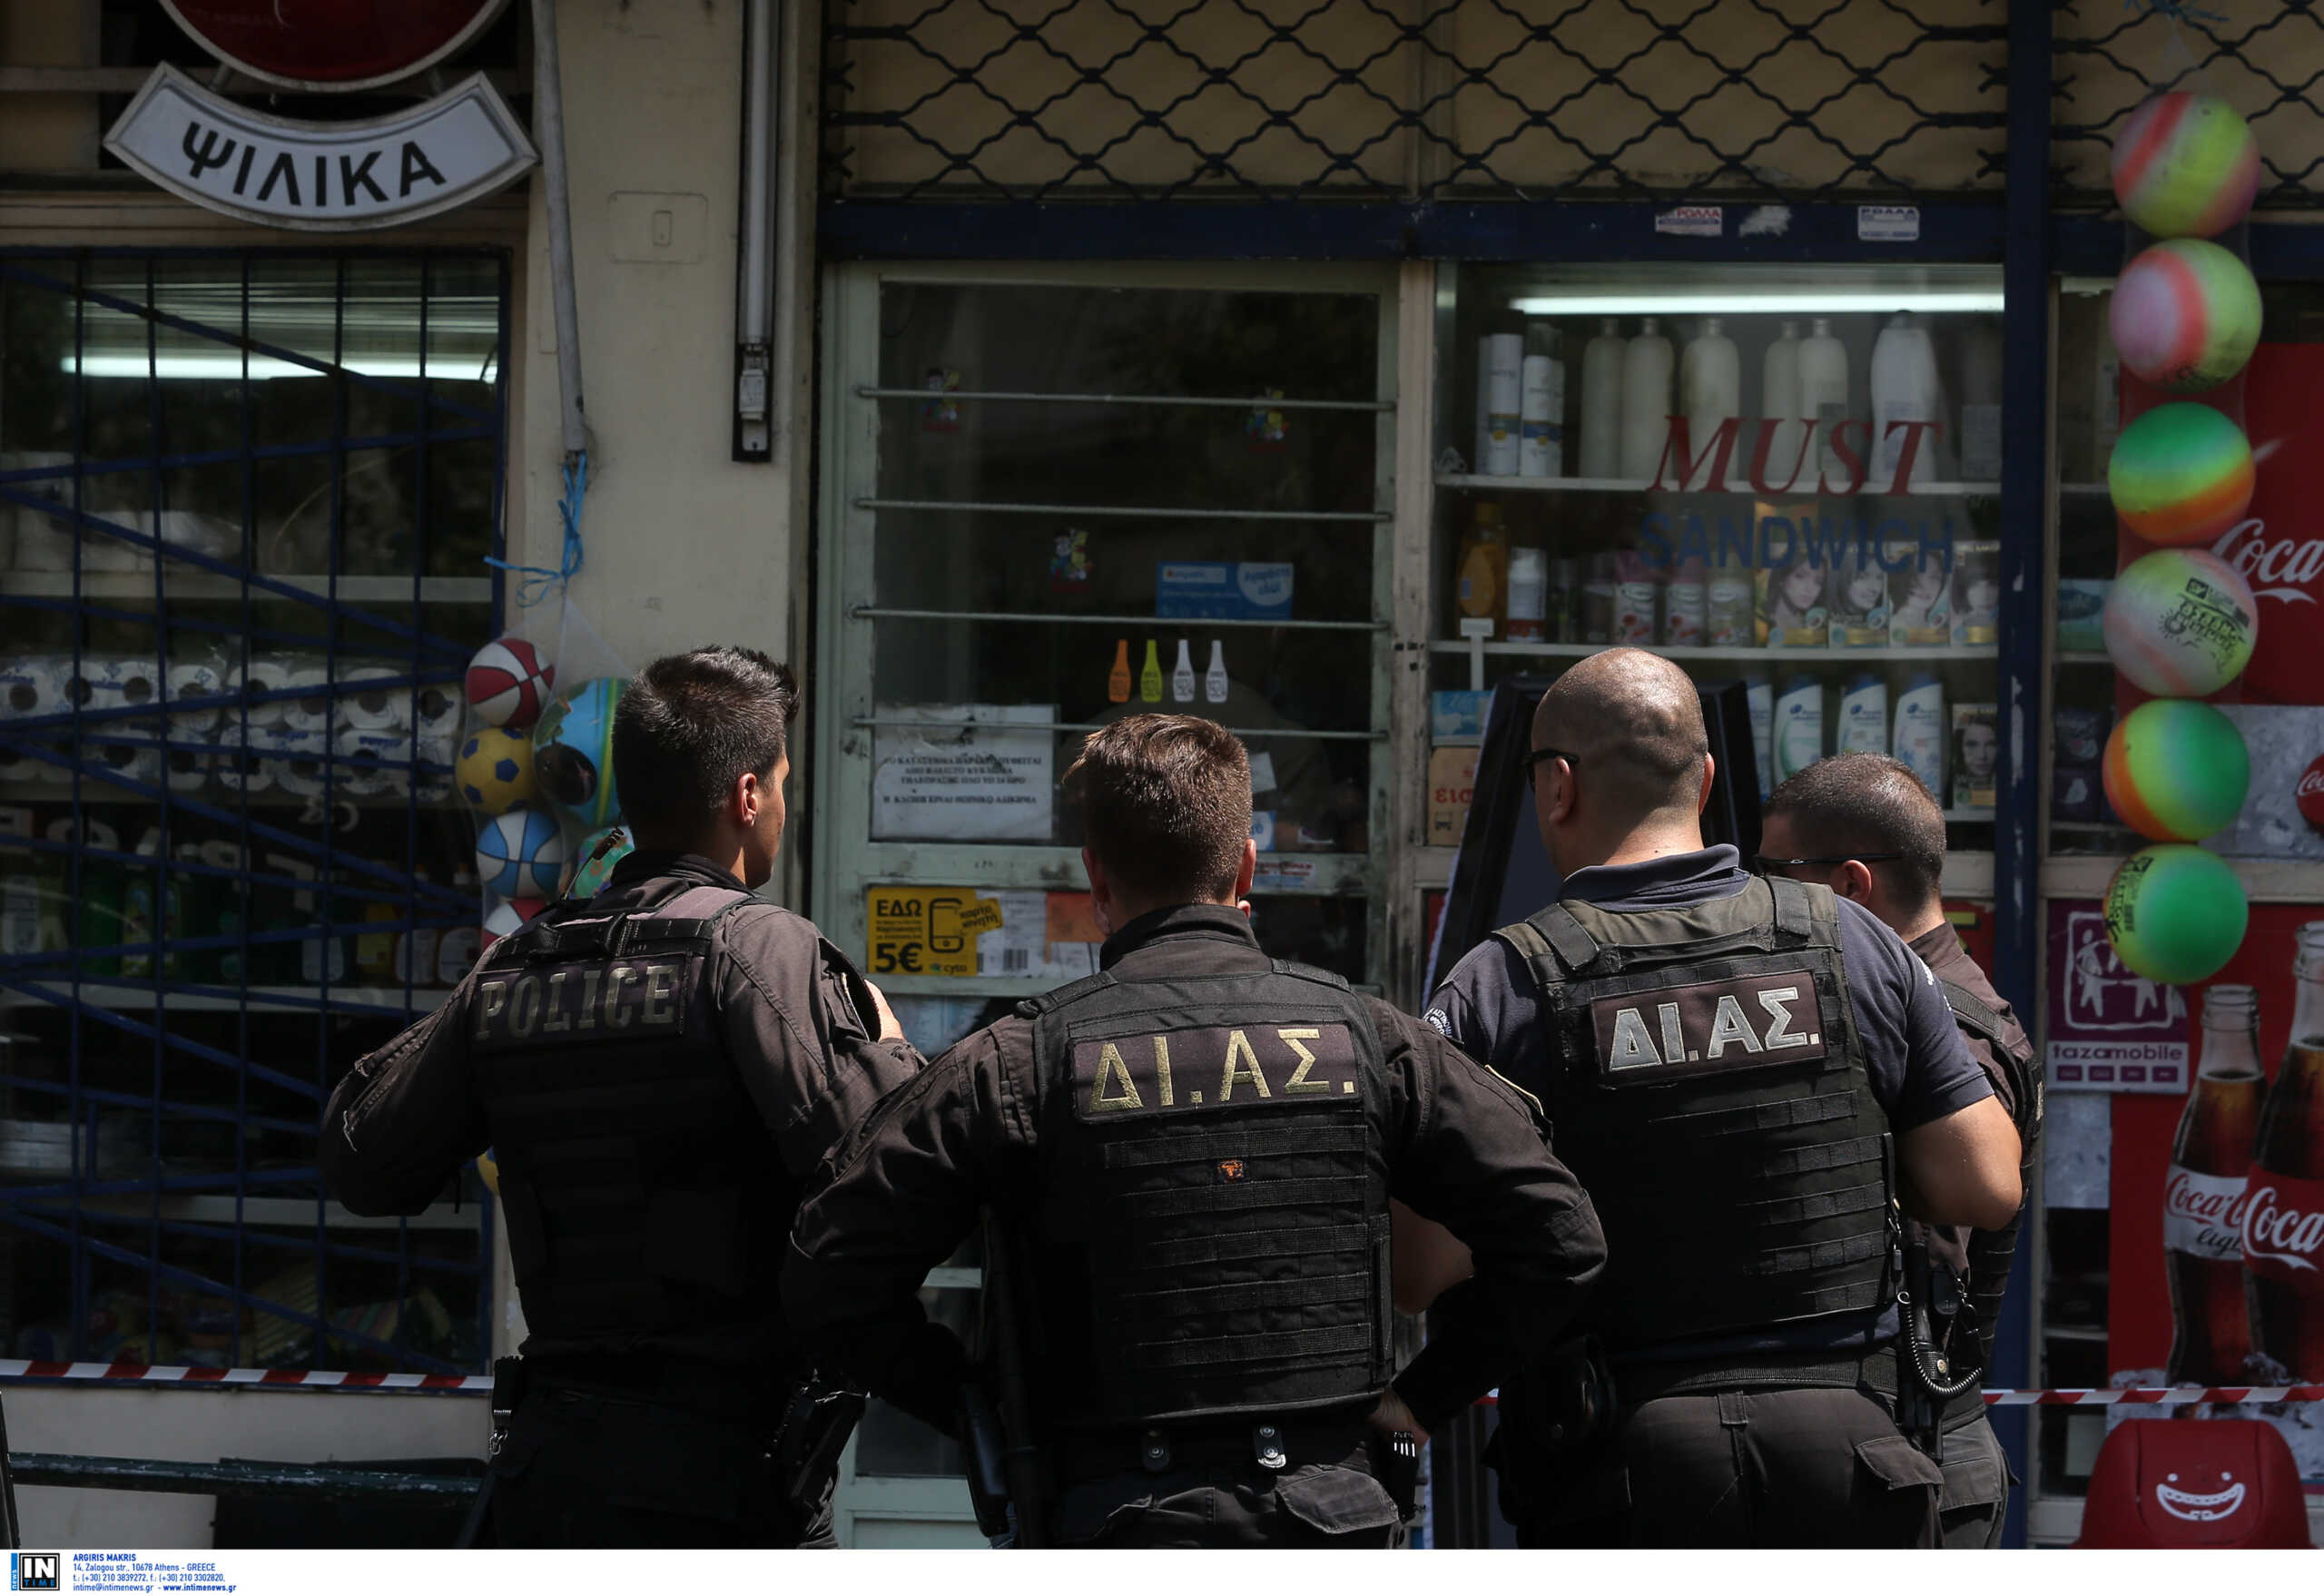 Θεσσαλονίκη: Απόπειρα ληστείας σε ψιλικατζίδικο με δύο συλλήψεις και μάχες σώμα με σώμα